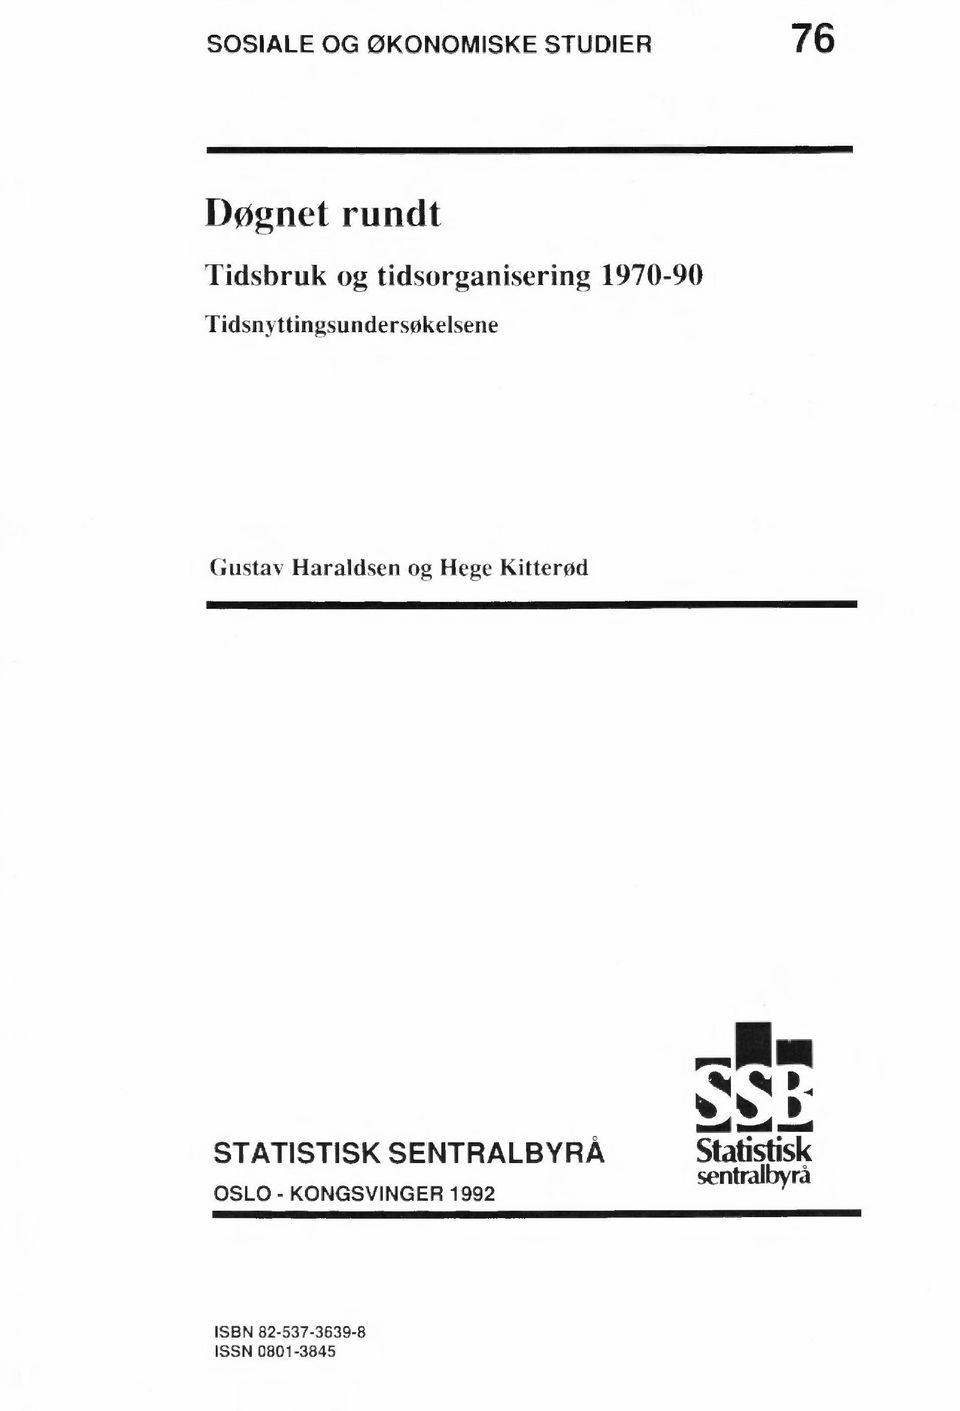 Gustav Haraldsen og Hege Kitterød STATISTISK